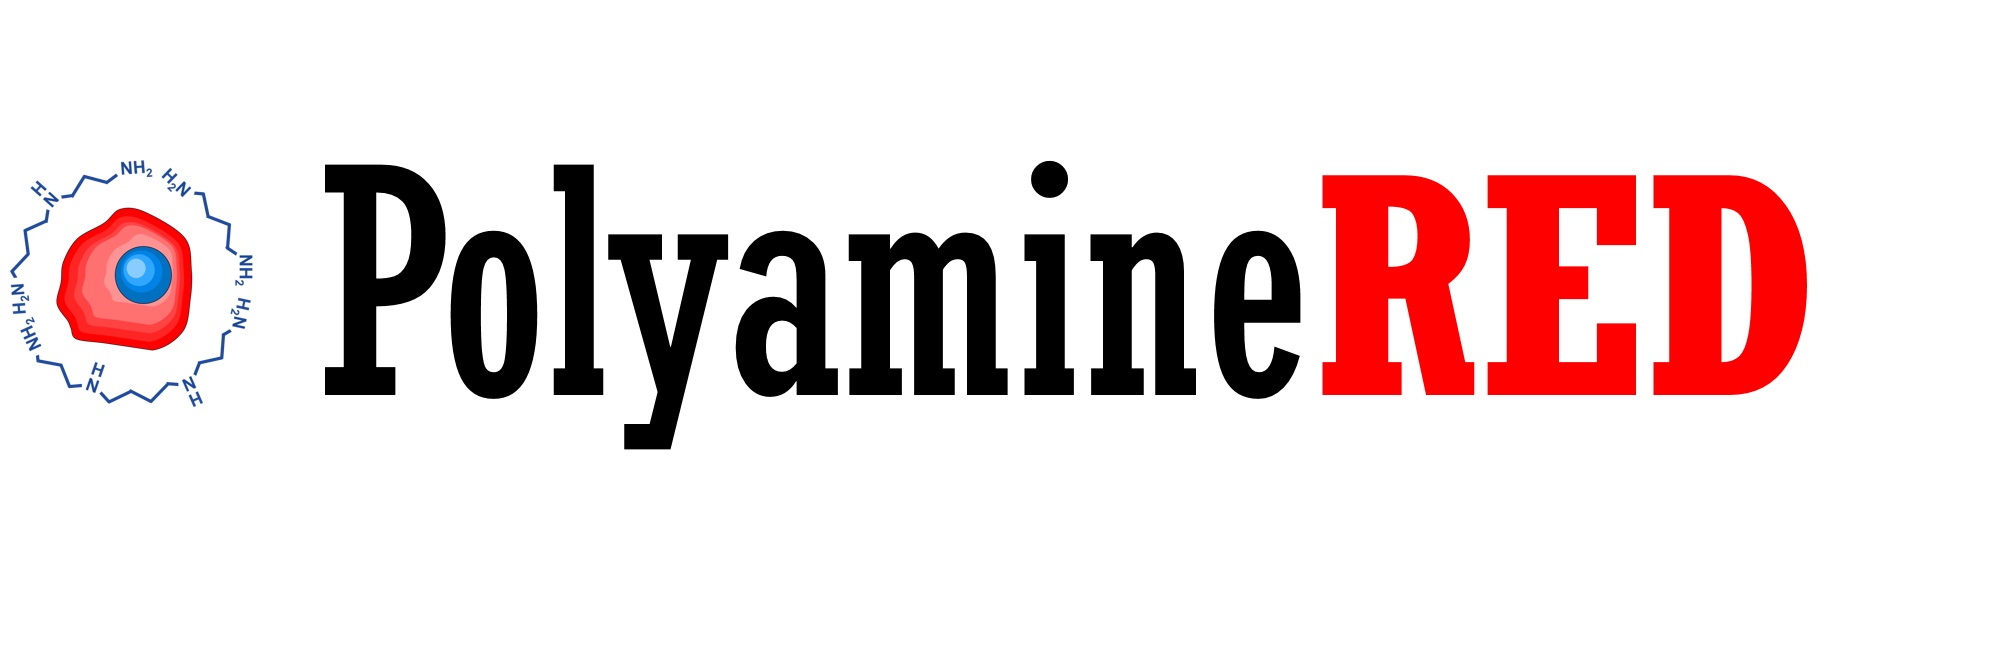 PolyamineRED logo